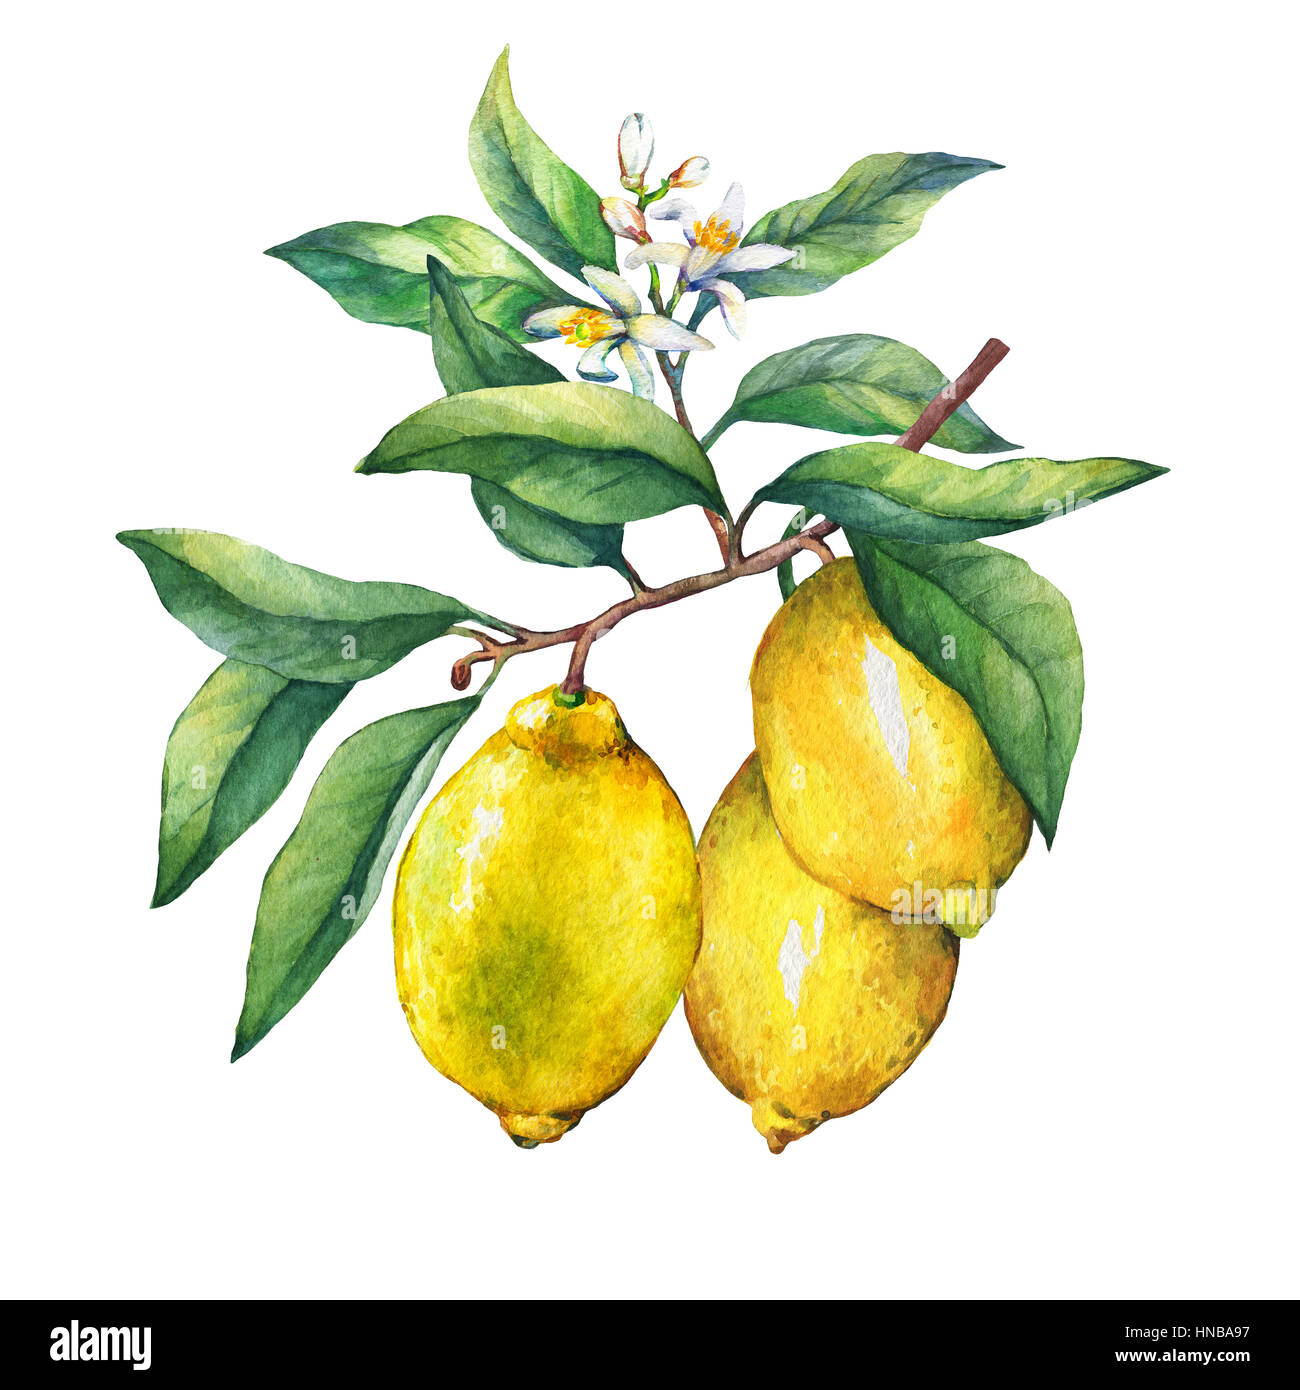 Les agrumes frais citron sur une branche avec fruits, feuilles vertes, de bourgeons et de fleurs. La main de l'aquarelle sur fond blanc. Banque D'Images